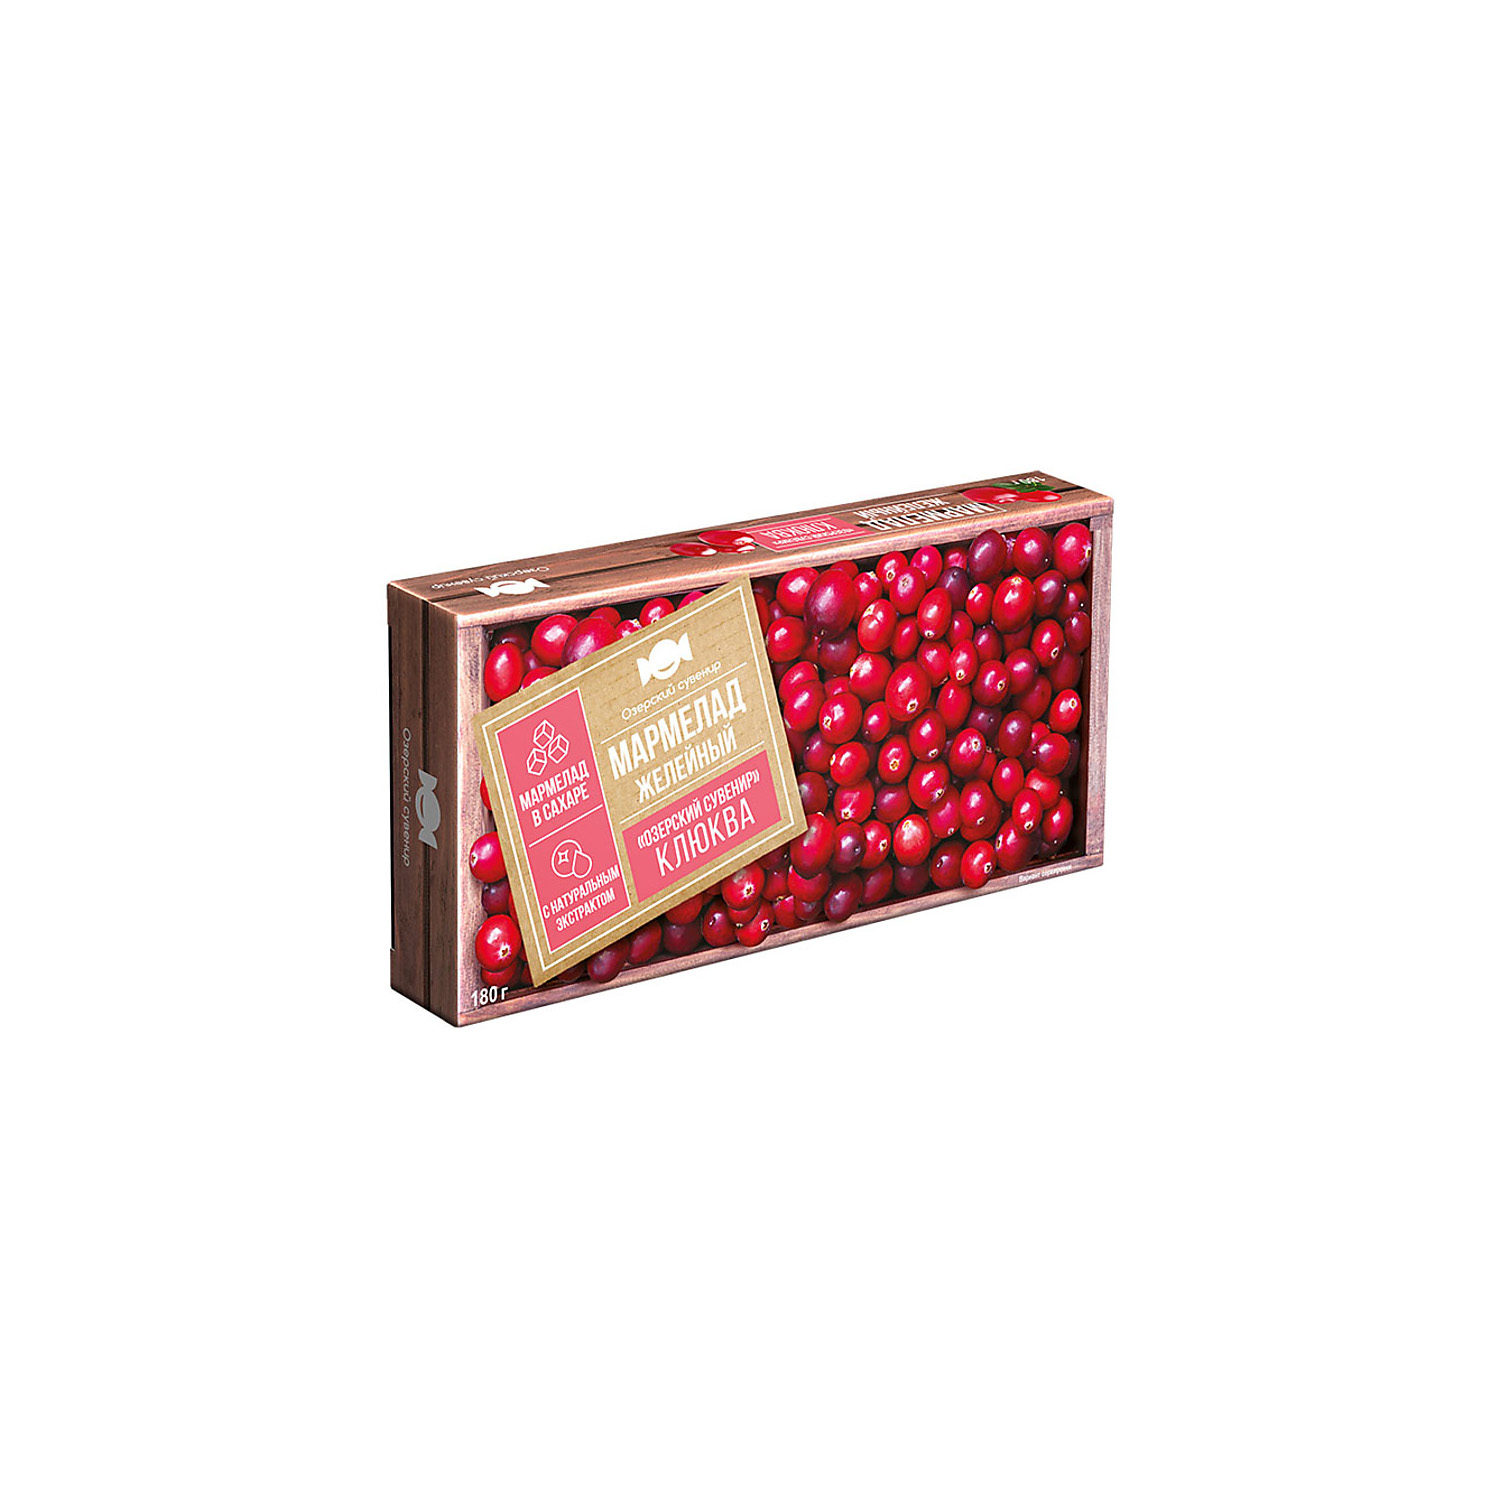 Мармелад Озёрский сувенир со вкусом клюквы желейный в виде кубиков 4 пачки по 180 грамм - фото 1